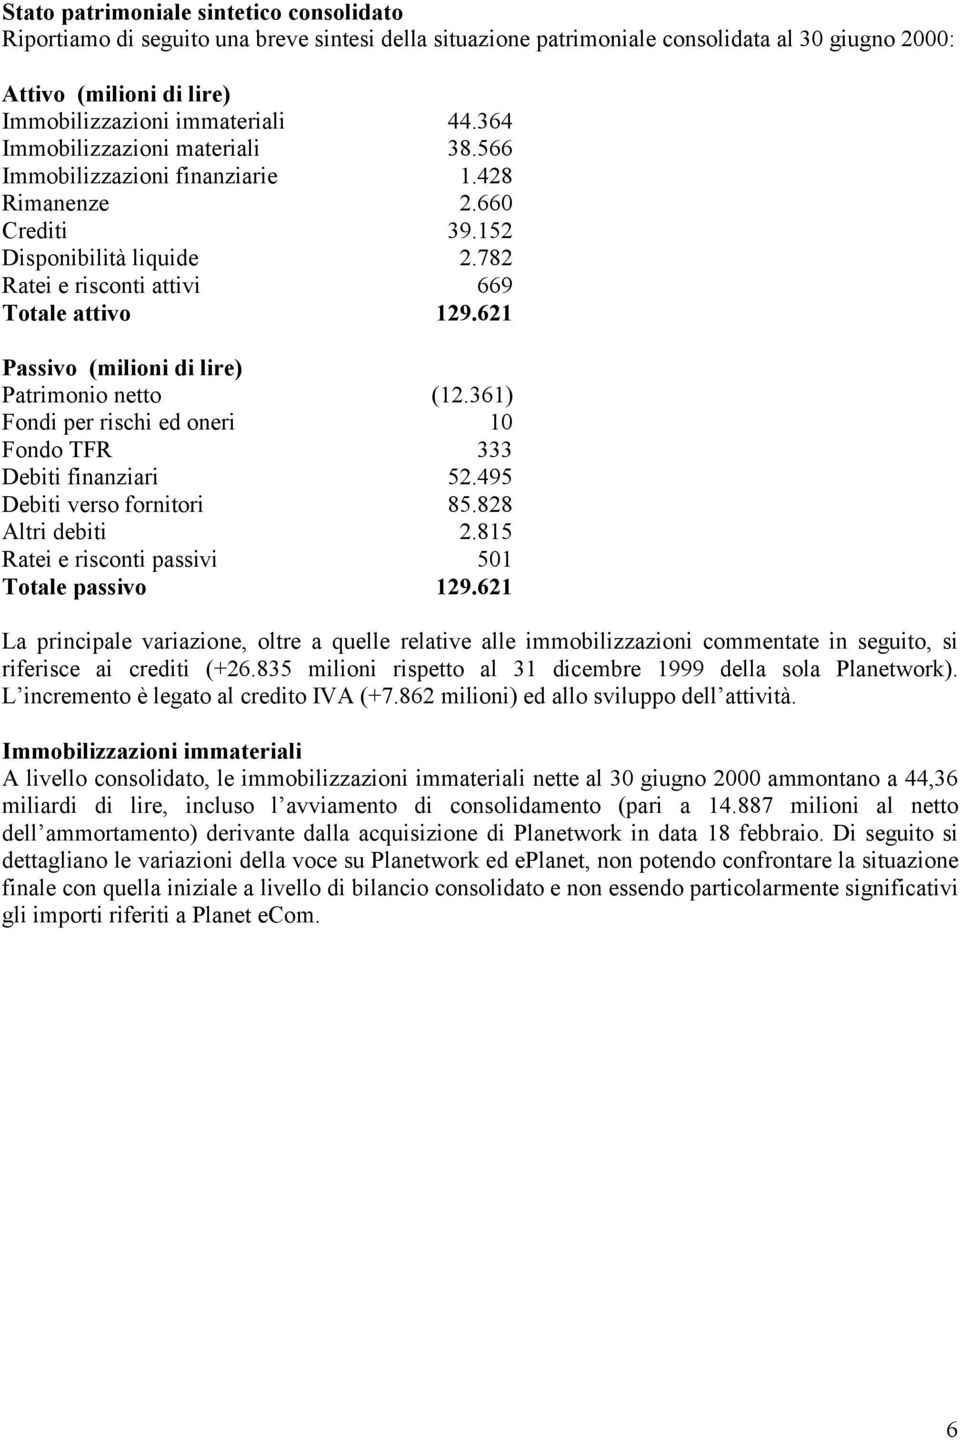 621 Passivo (milioni di lire) Patrimonio netto (12.361) Fondi per rischi ed oneri 10 Fondo TFR 333 Debiti finanziari 52.495 Debiti verso fornitori 85.828 Altri debiti 2.